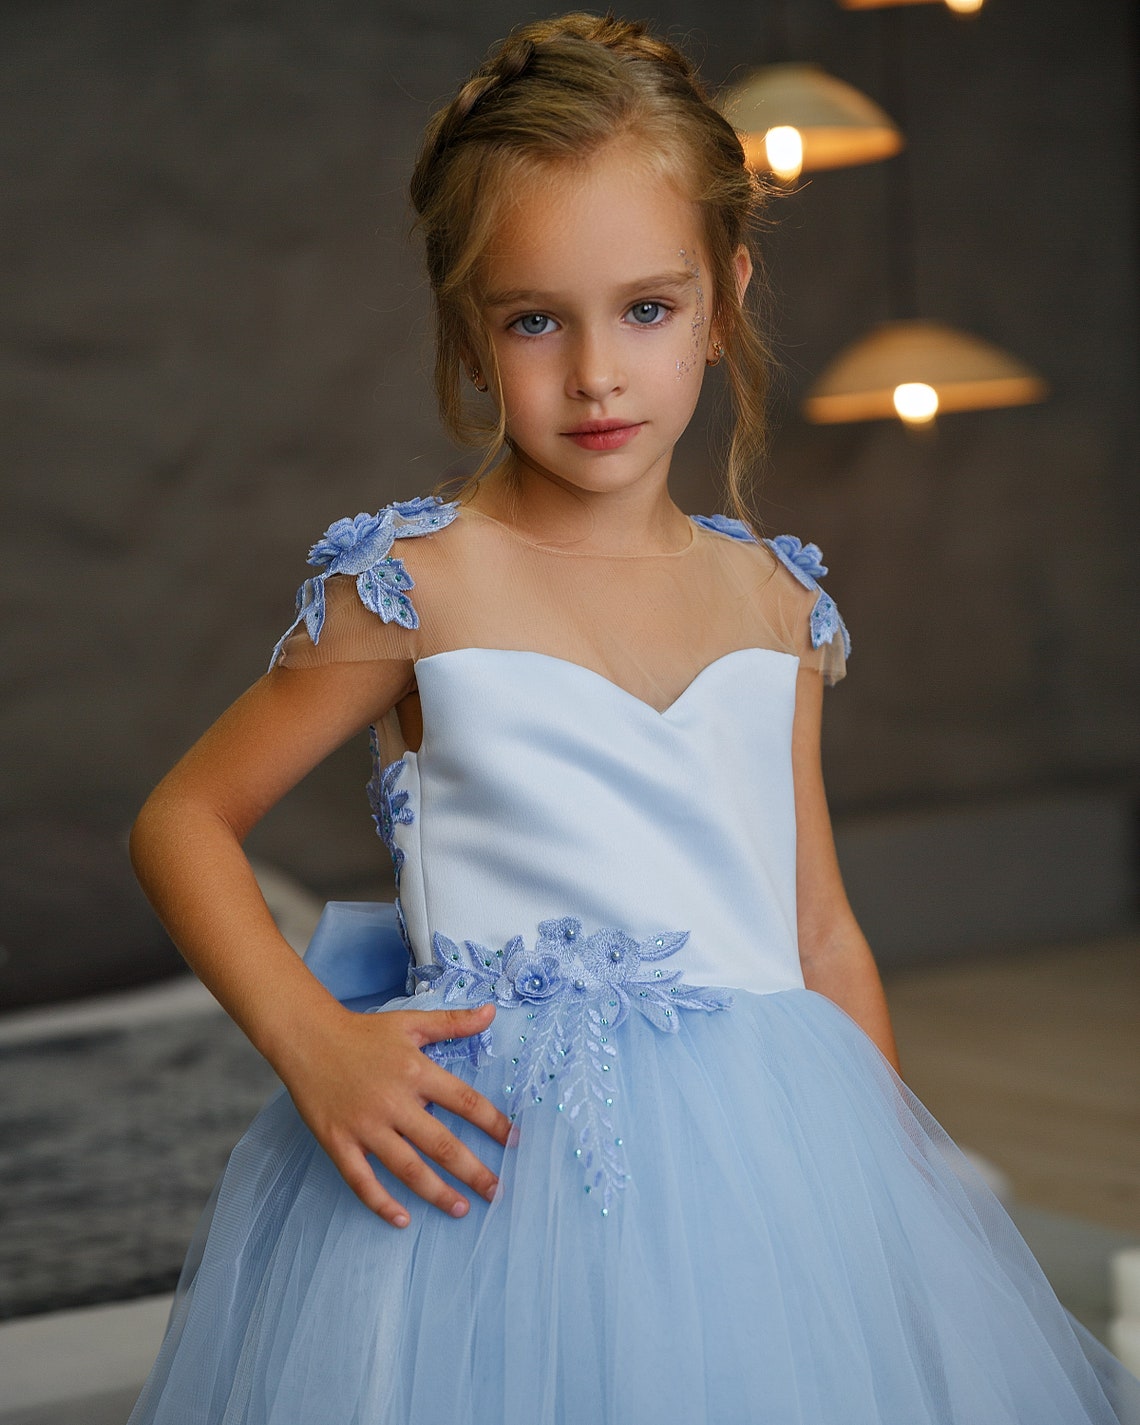 Rustic Flower Girl Dress Toddler Girl Dress Girl Wedding - Etsy